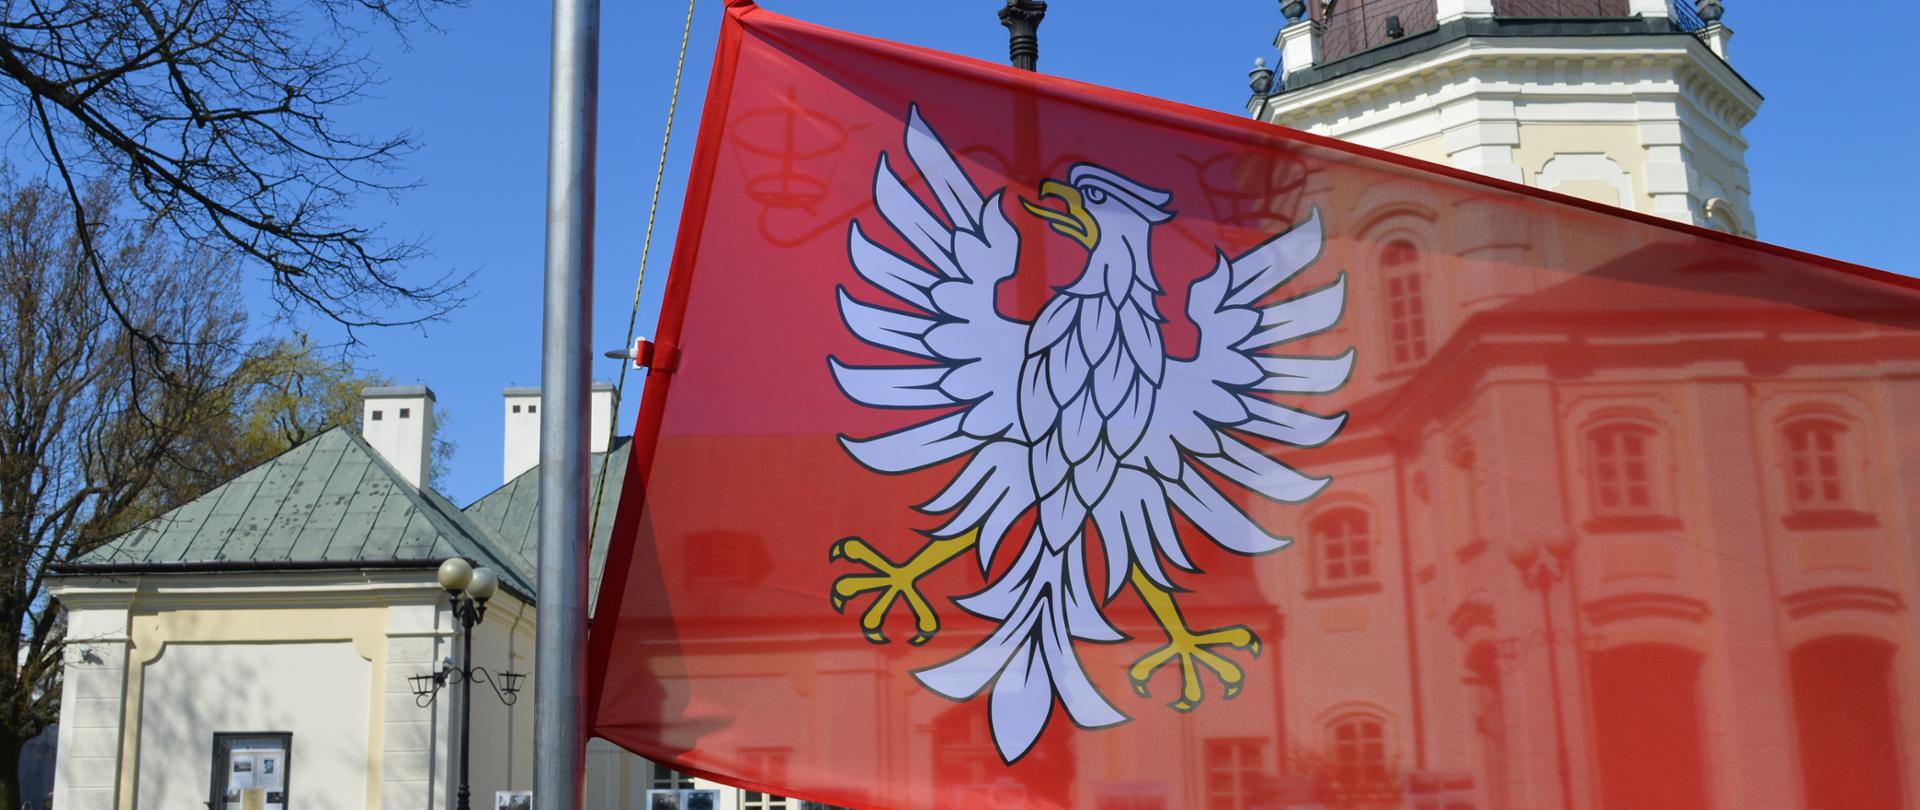 Flaga Mazowsza w Siedlcach 28.04.2021 r.